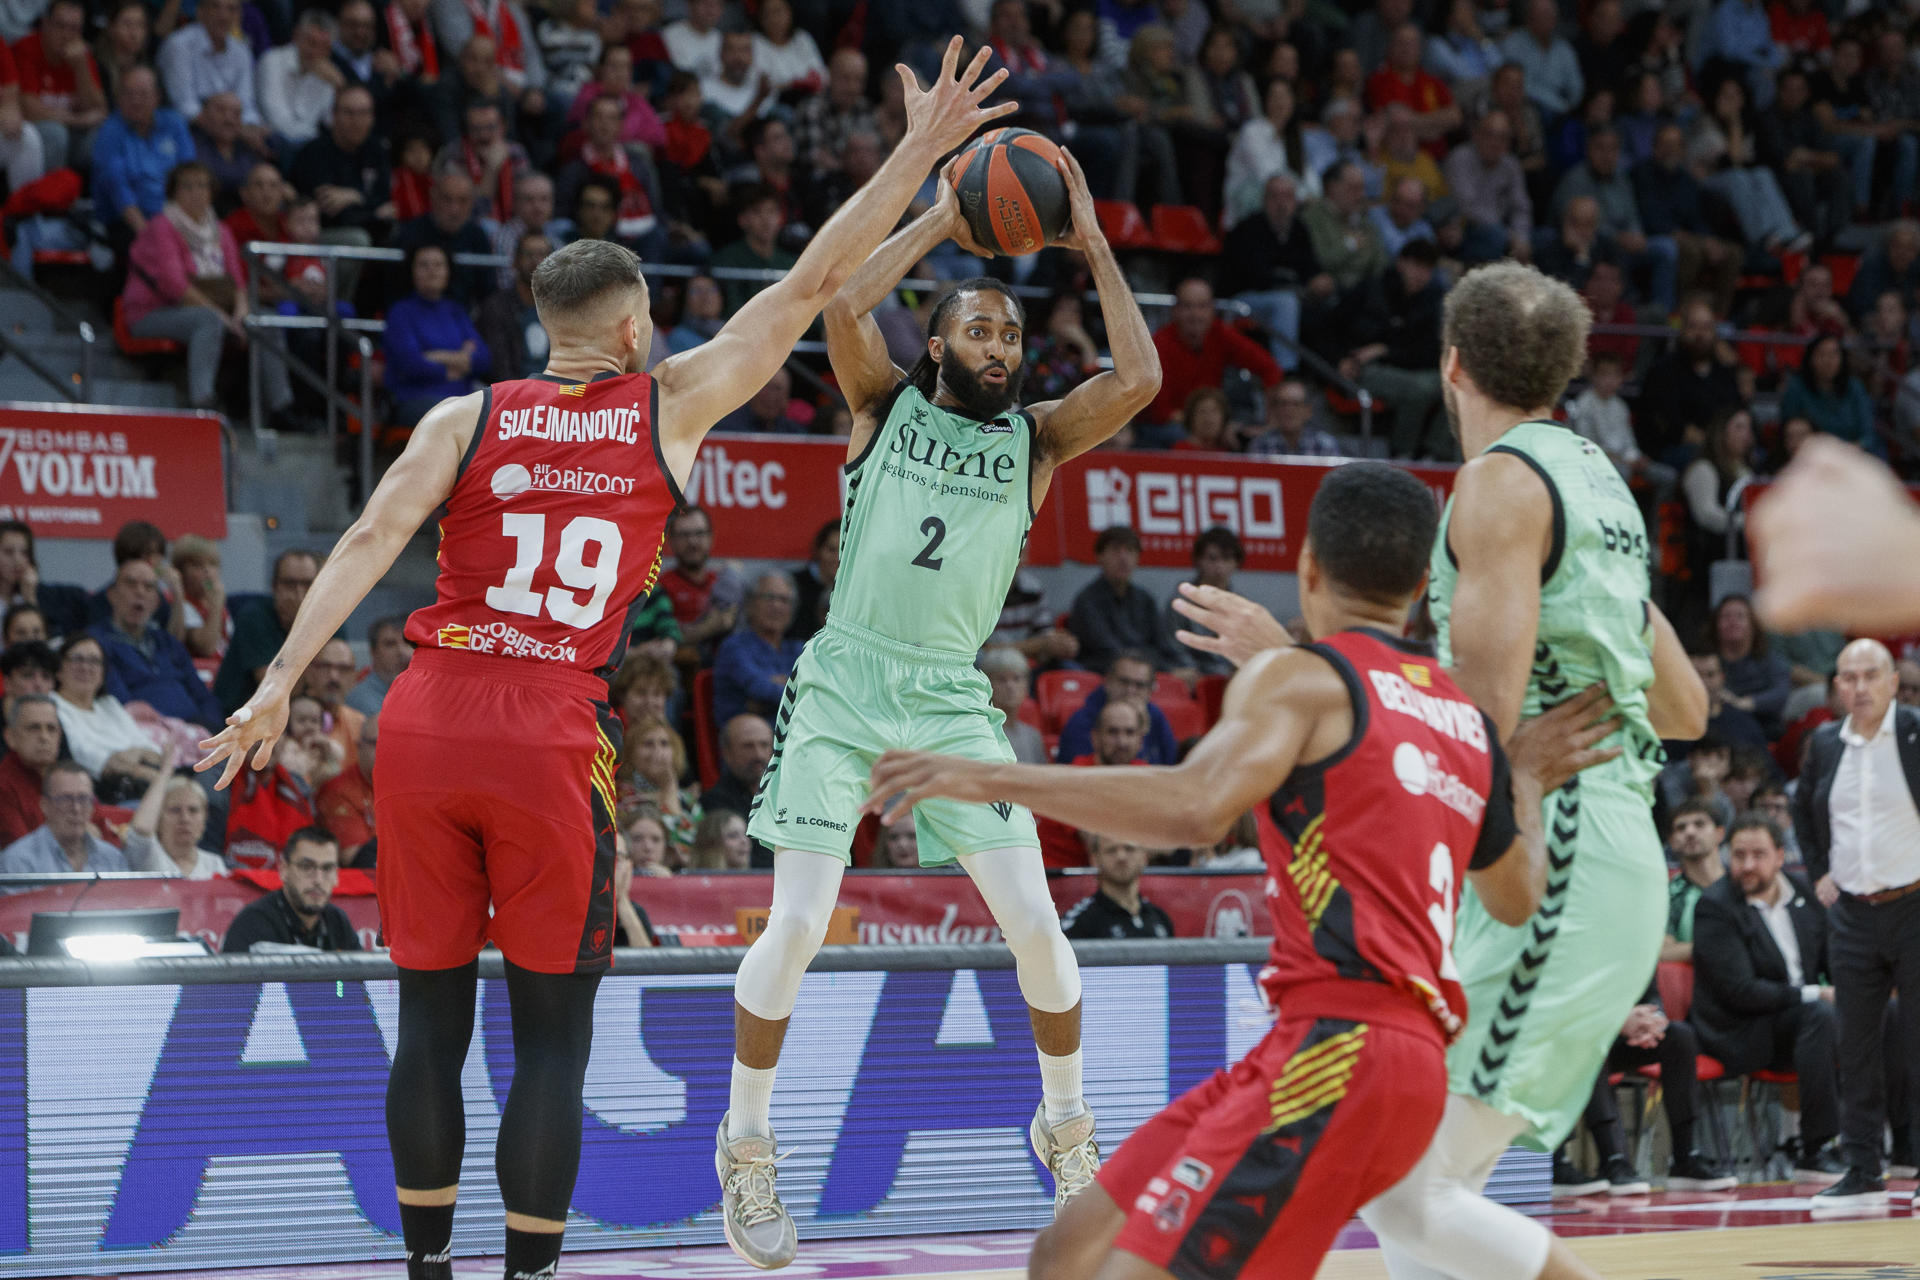 El guardia estadounidense del Surne Bilbao Basket Adam Smith (2i) controla una posesión durante un encuentro correspondiente a la octava jornada de Liga ACB disputado entre el Casademont Zaragoza y el Surne Bilbao Basket en Zaragoza, este jueves. EFE/ Javier  Belver